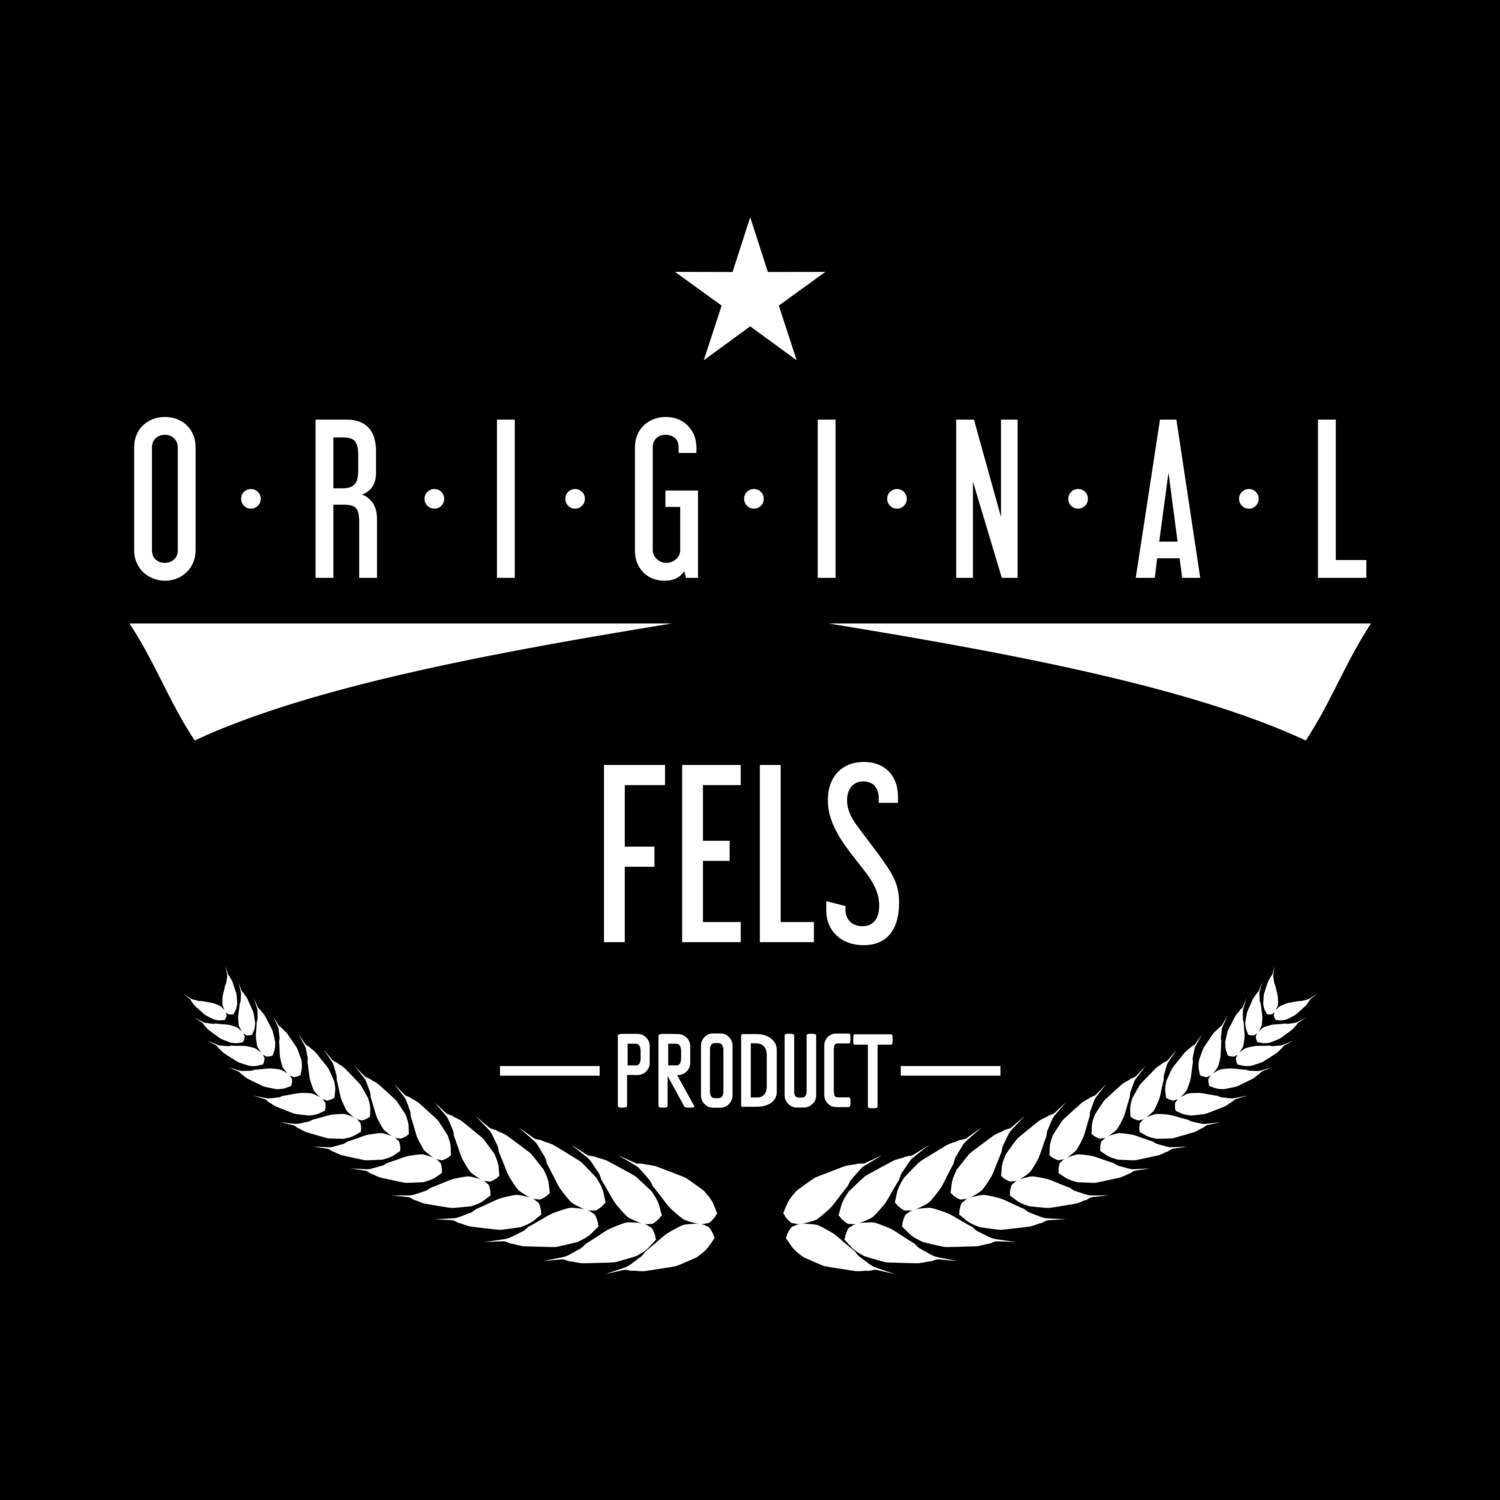 Fels T-Shirt »Original Product«